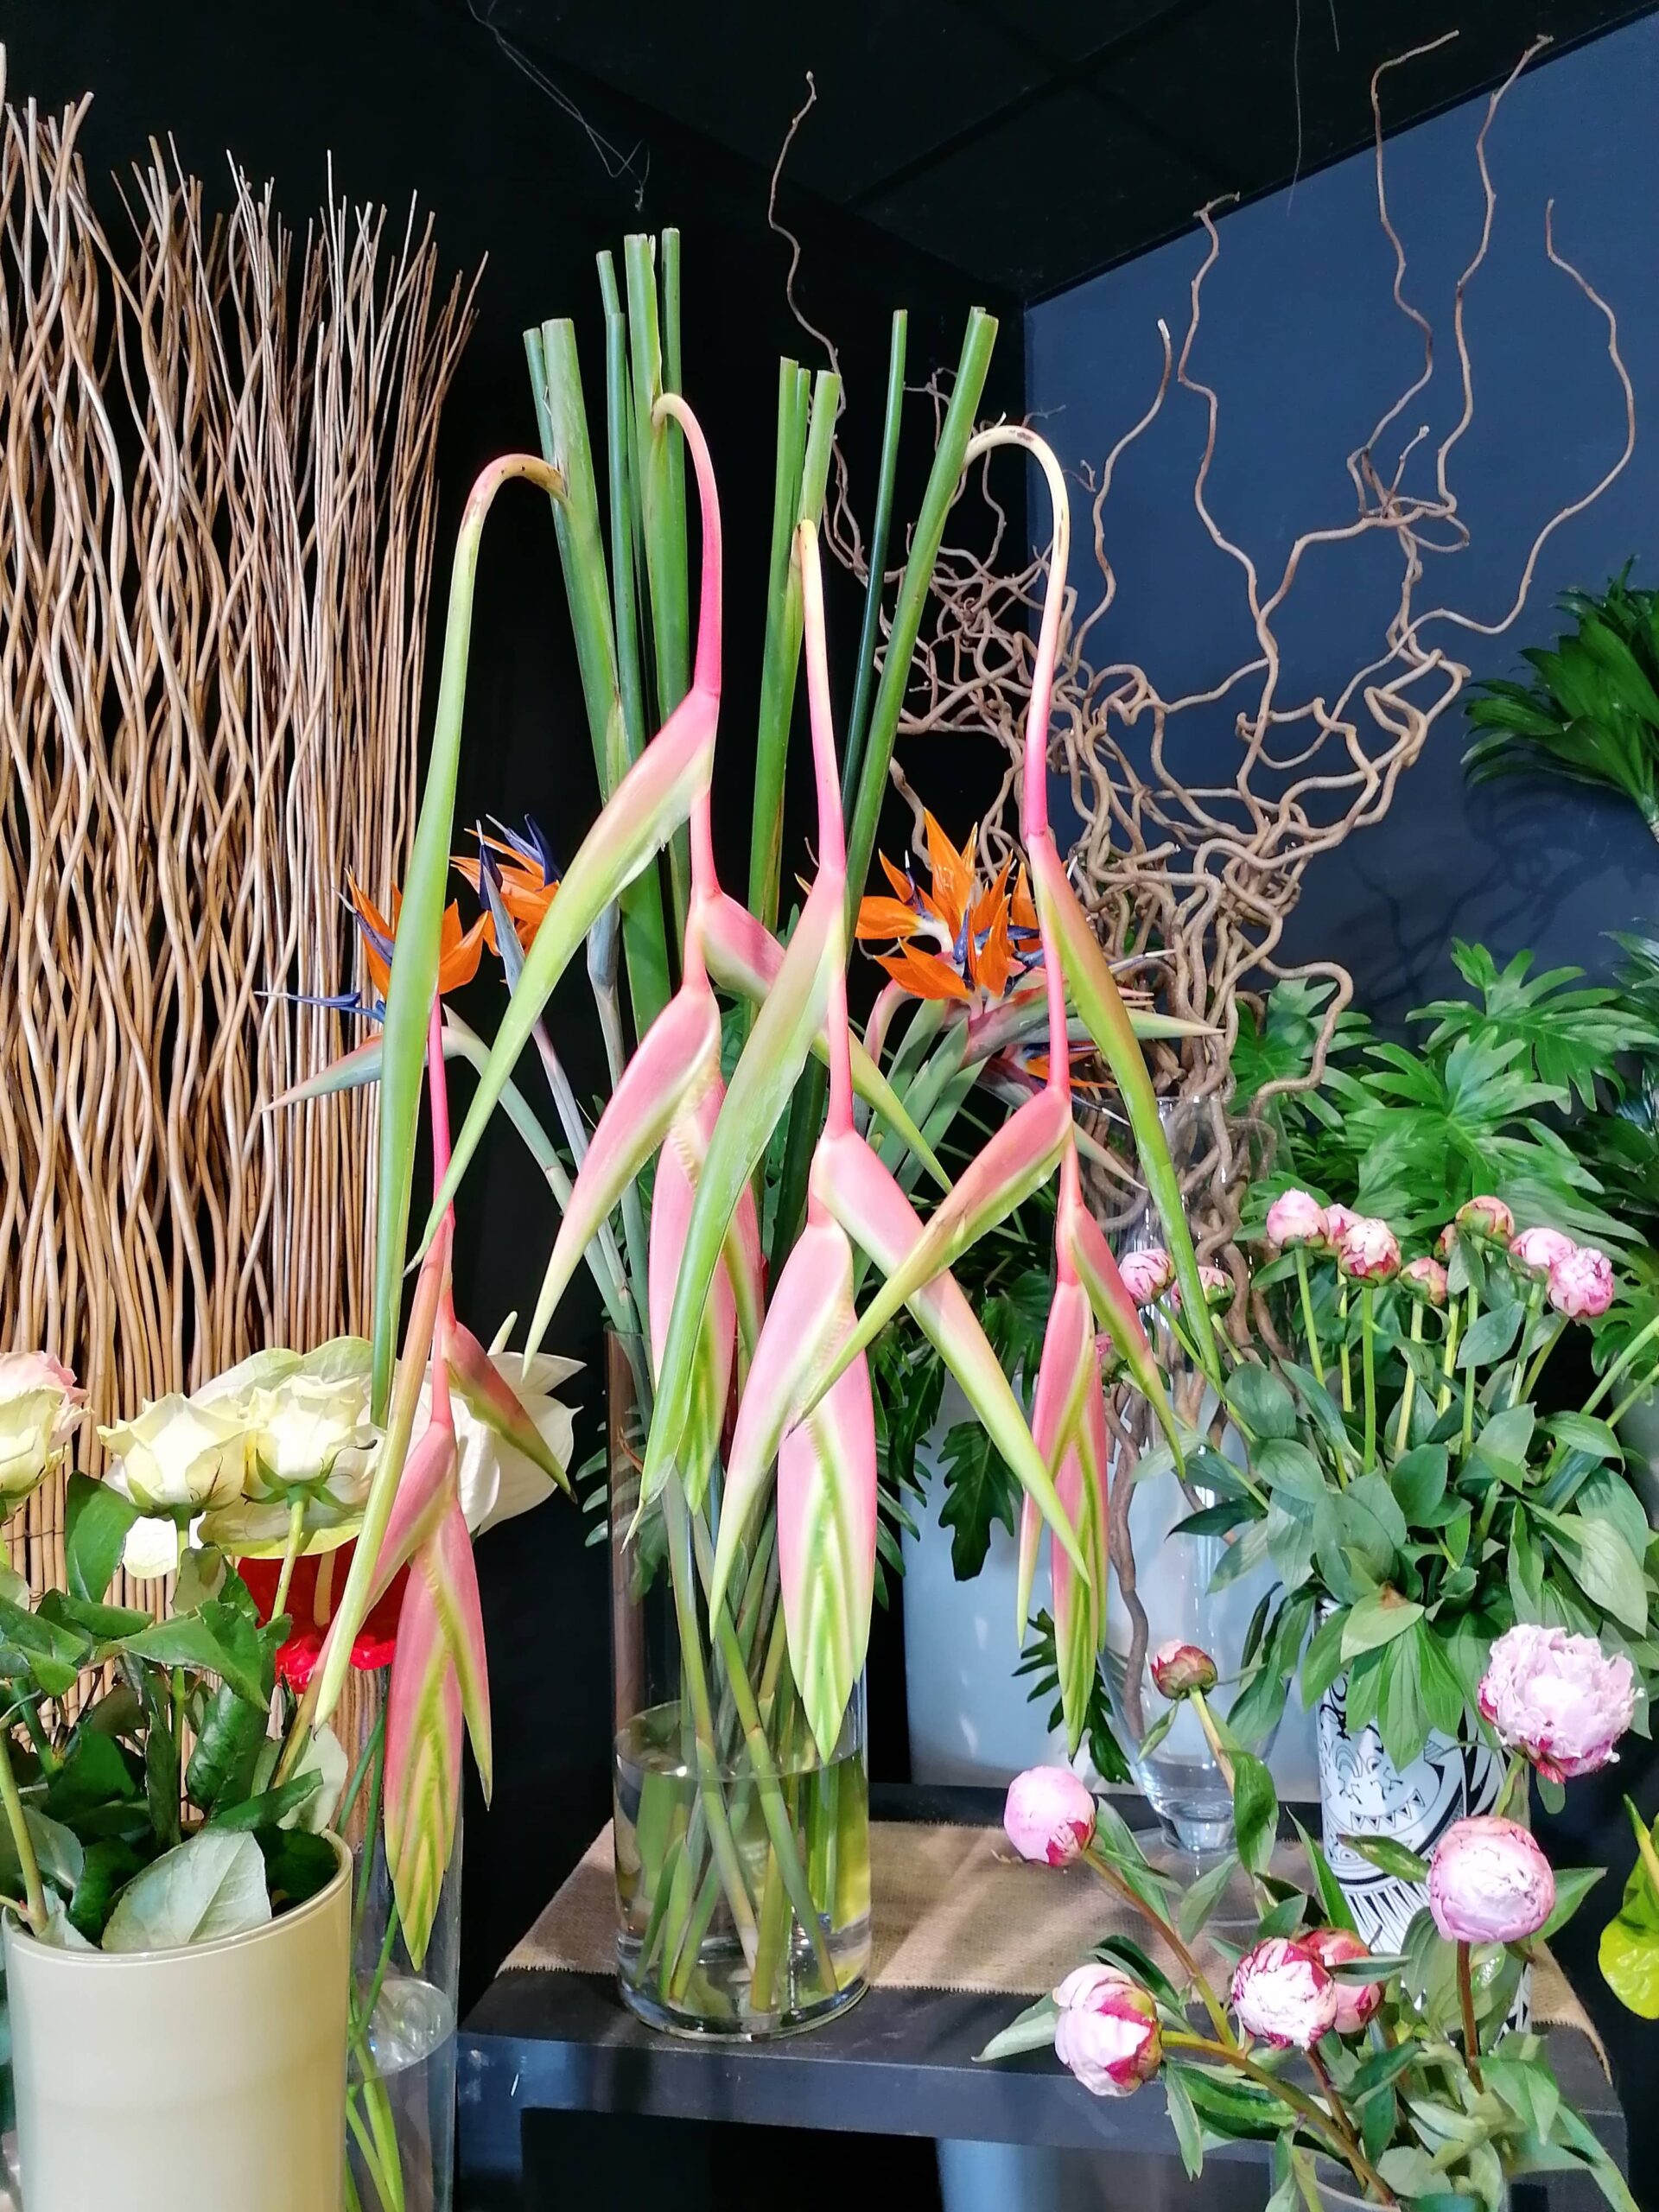 La Halle aux fleurs à Challans, magasin spécialisé dans la vente de fleurs et de plantes pour les particuliers comme les professionnels.